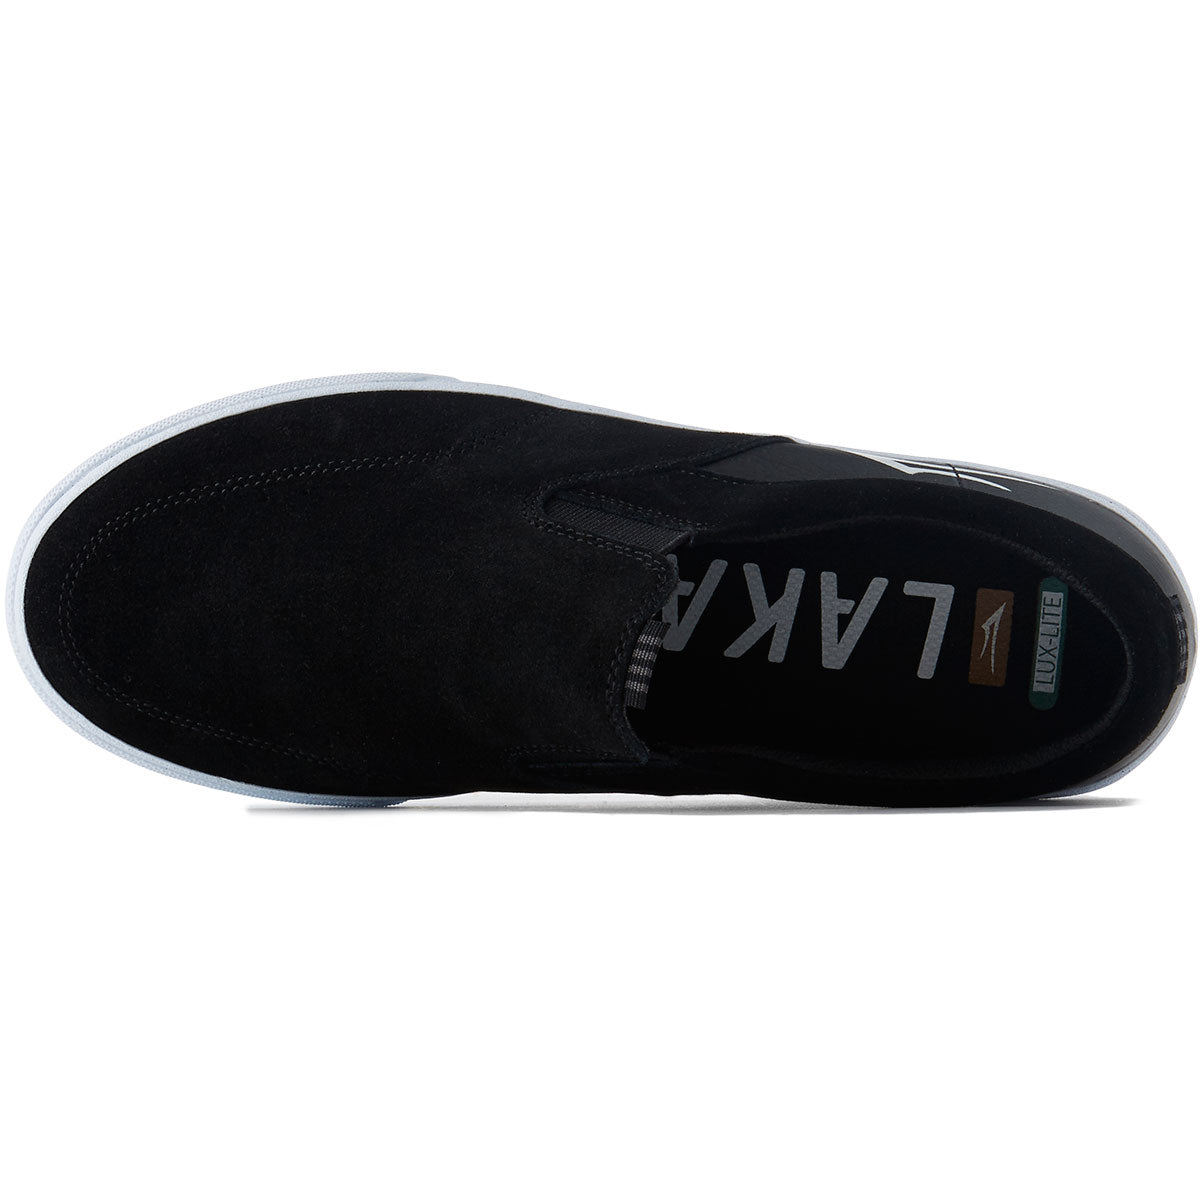 Lakai Owen Vulc Shoes - Black Suede image 4